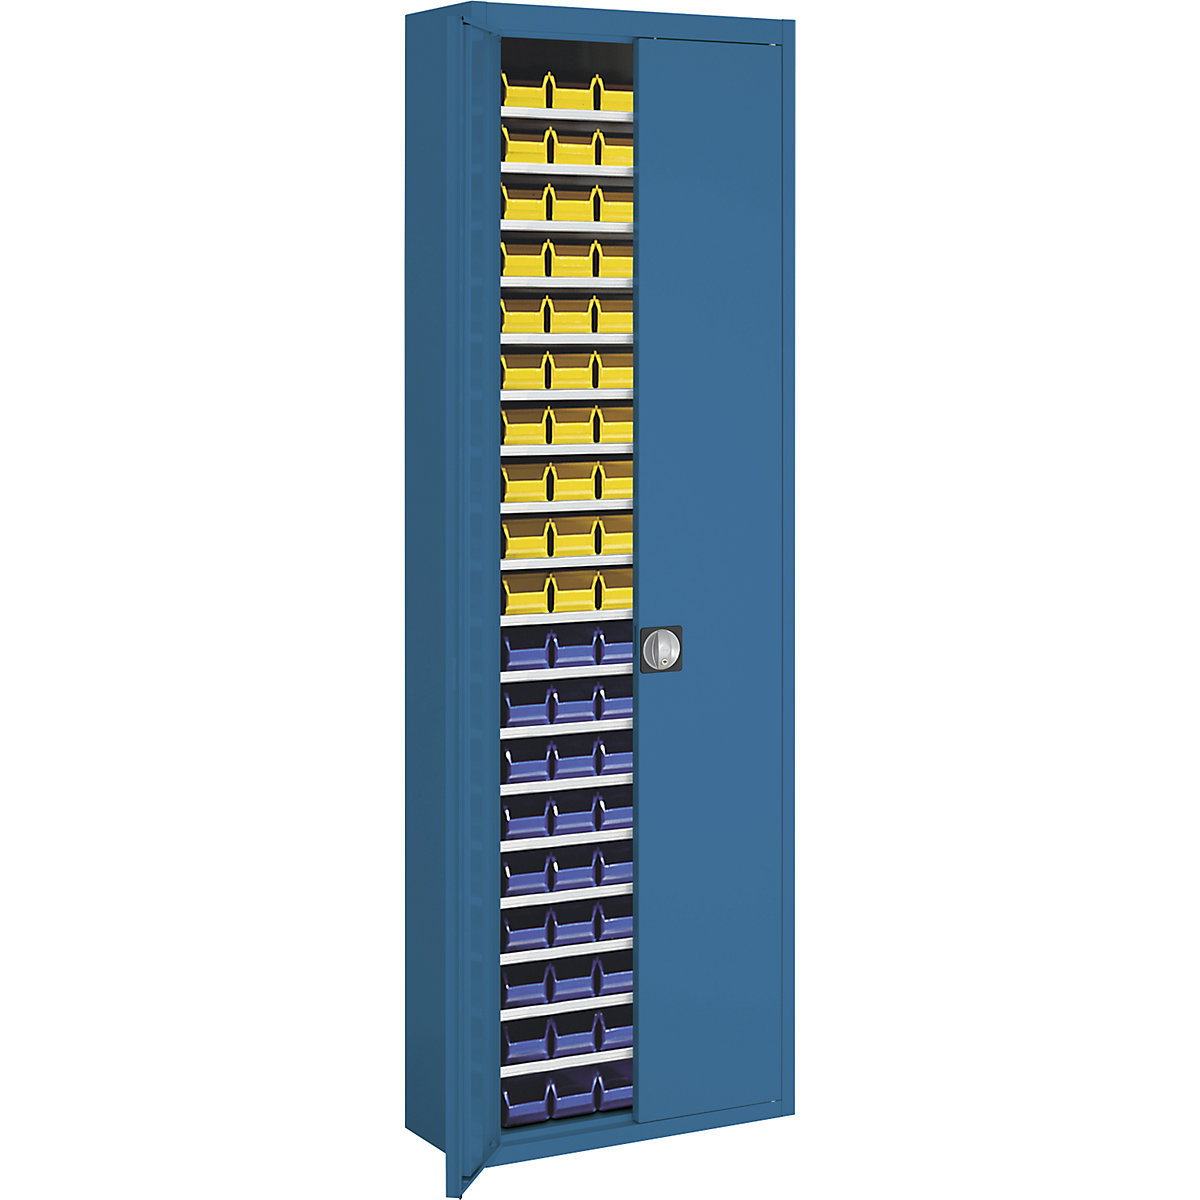 Raktári szekrény nyitott tárolódobozokkal – mauser, ma x szé x mé 2150 x 680 x 280 mm, egyszínű, kék, 114 doboz-8